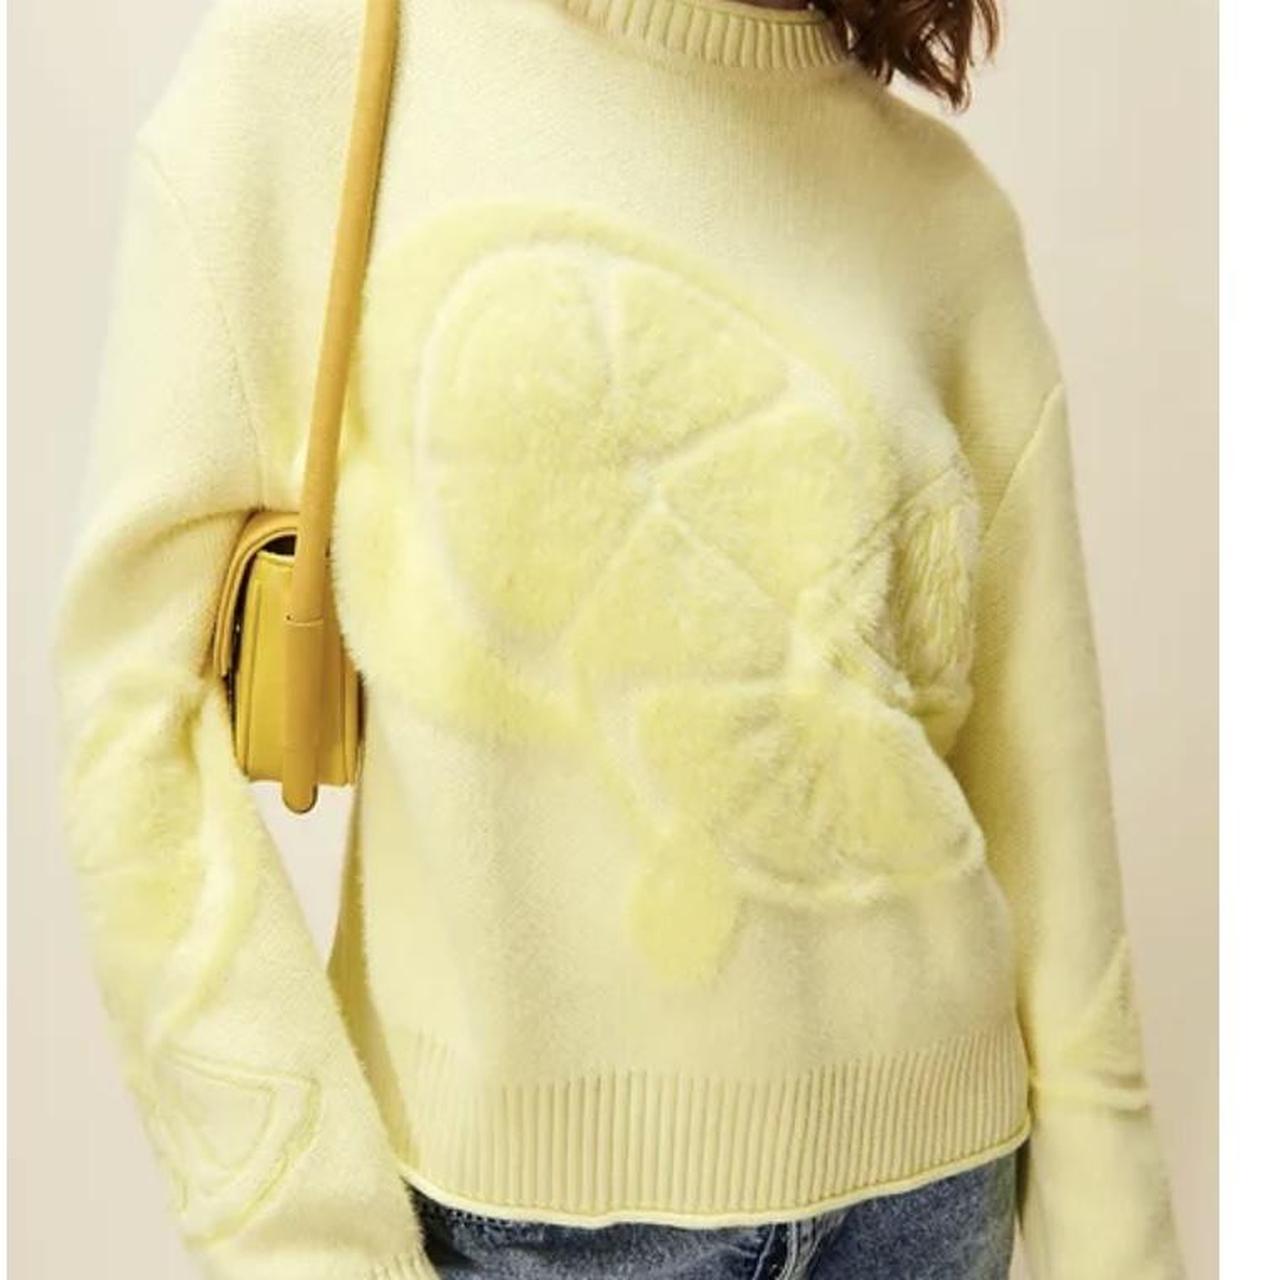 House of sunny still life knit lemon jumper sweater... - Depop